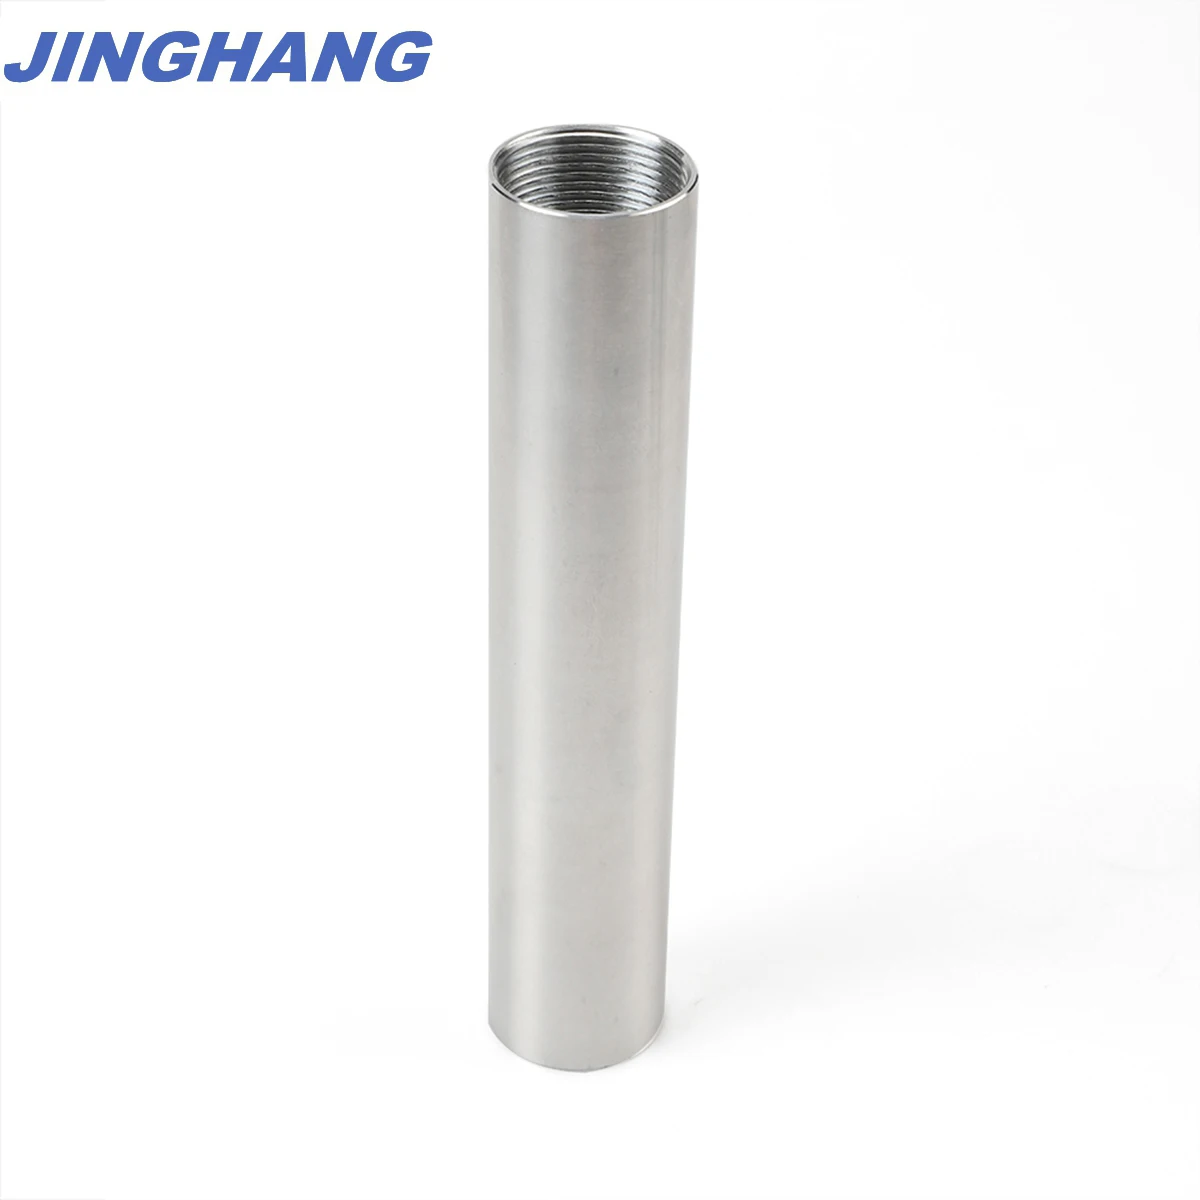 1X6 топливная ловушка/растворитель фильтр NAPA 4003, WIX 24003,1/2-28 Серебряный алюминий